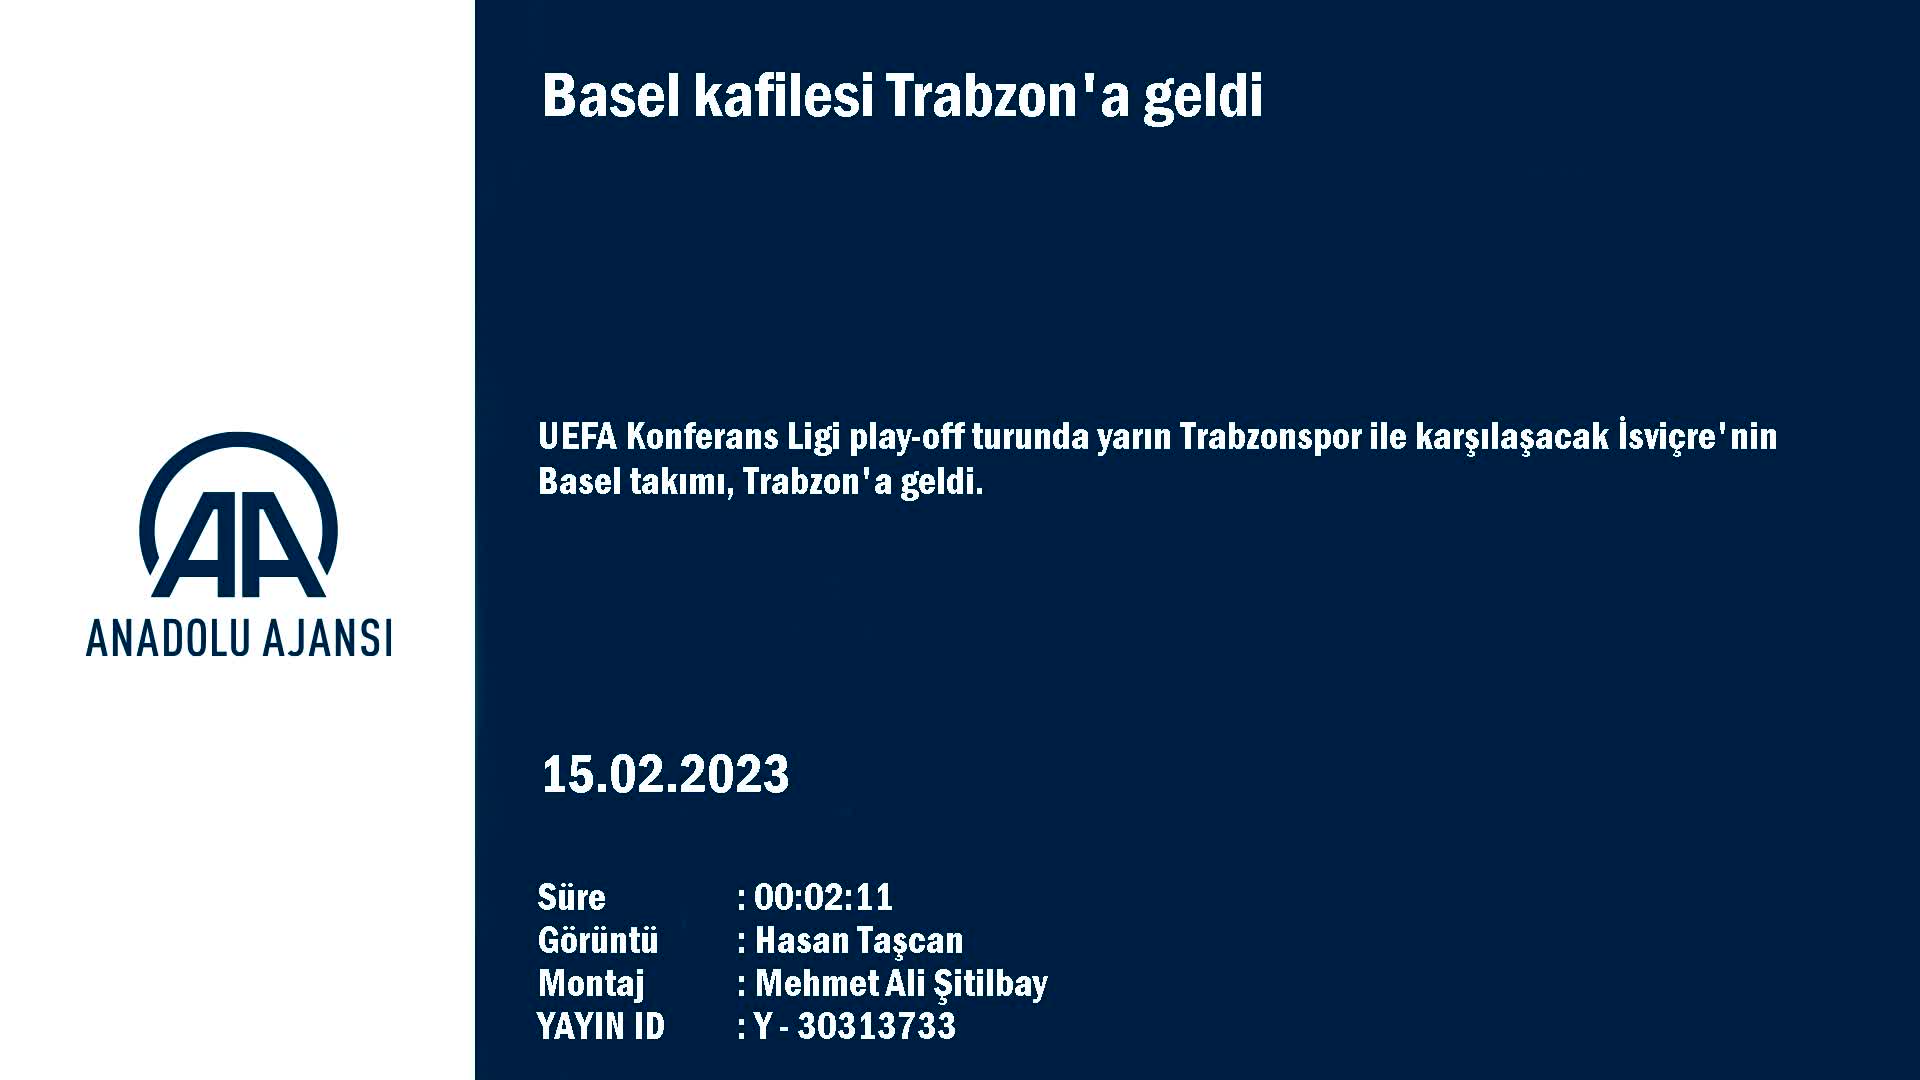 Basel kafilesi Trabzon’a geldi